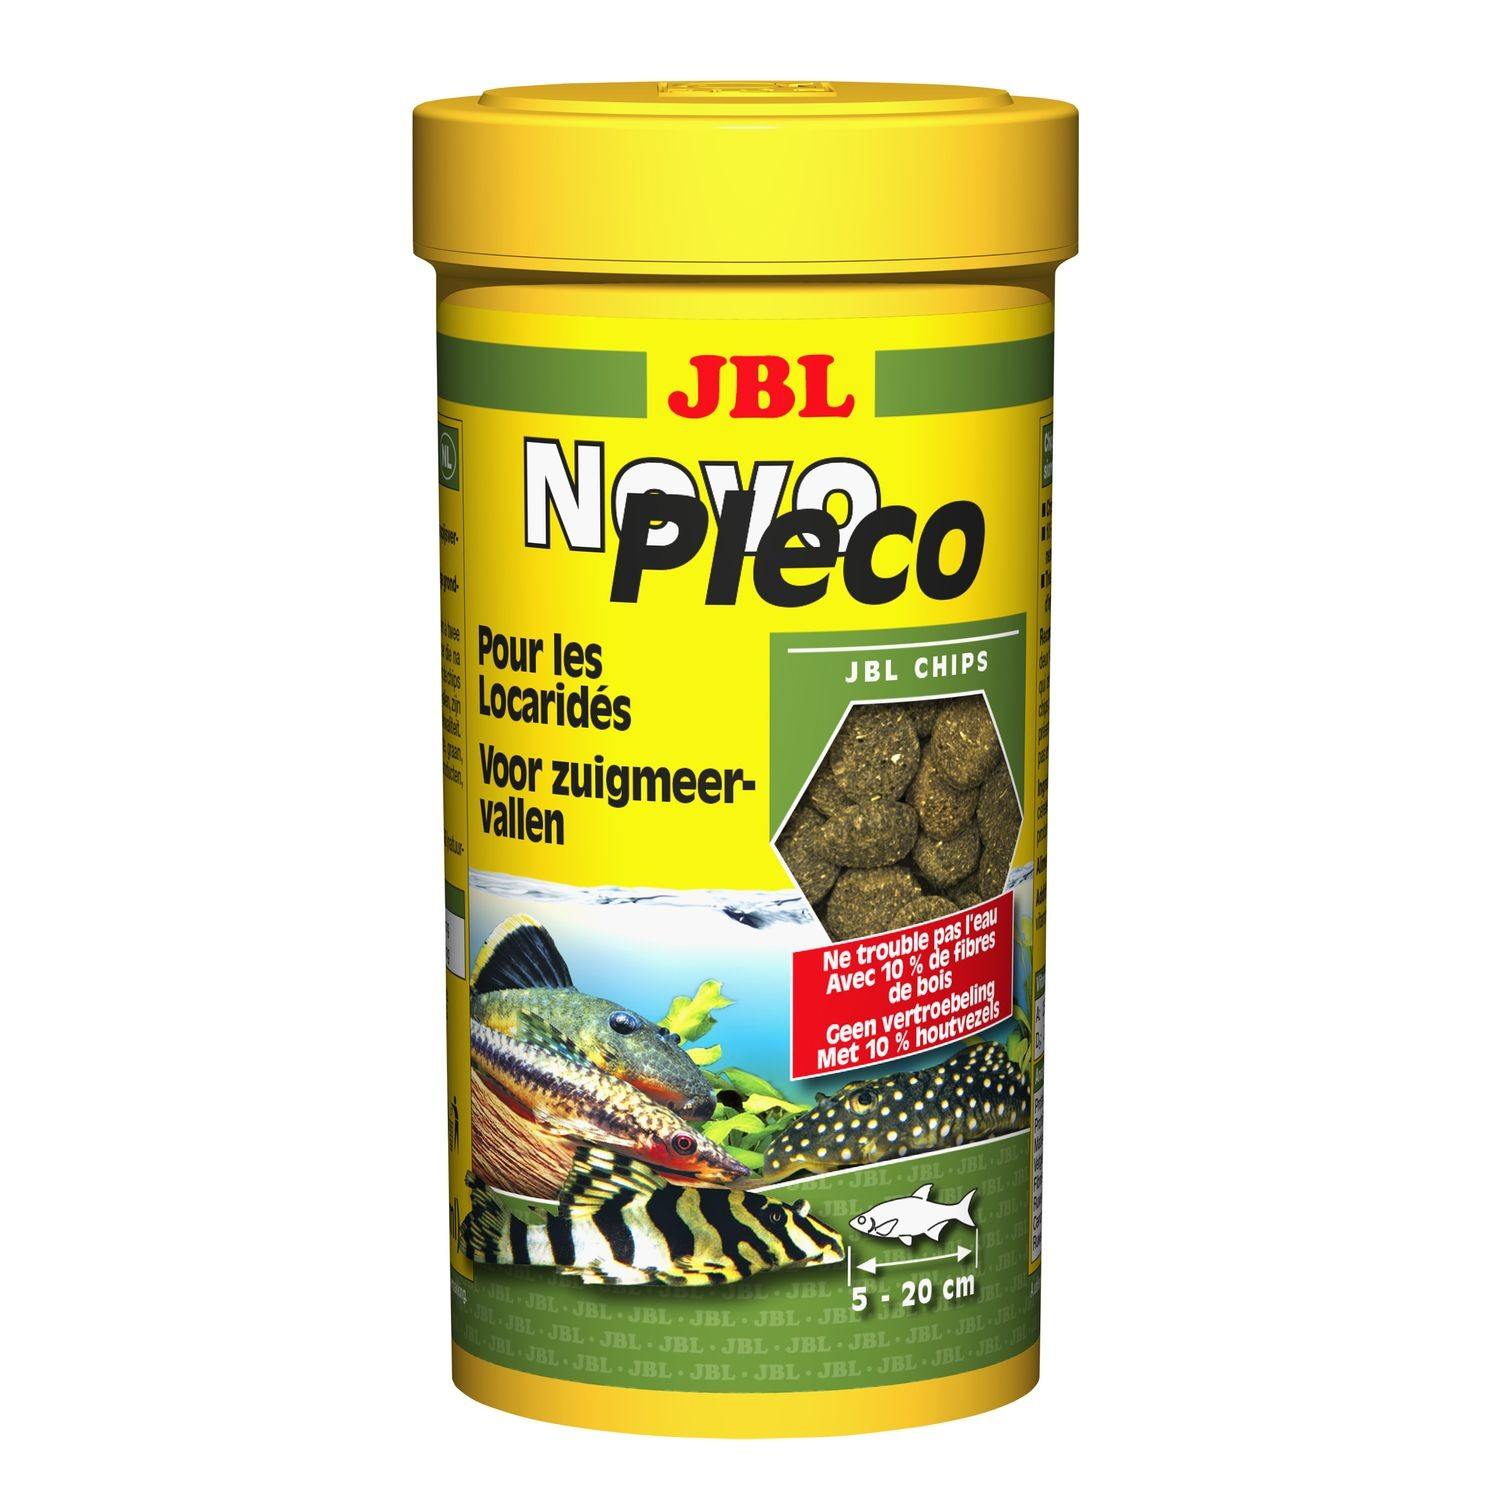 JBL NovoPleco Chips Alimento para plecos pequeños y medianos